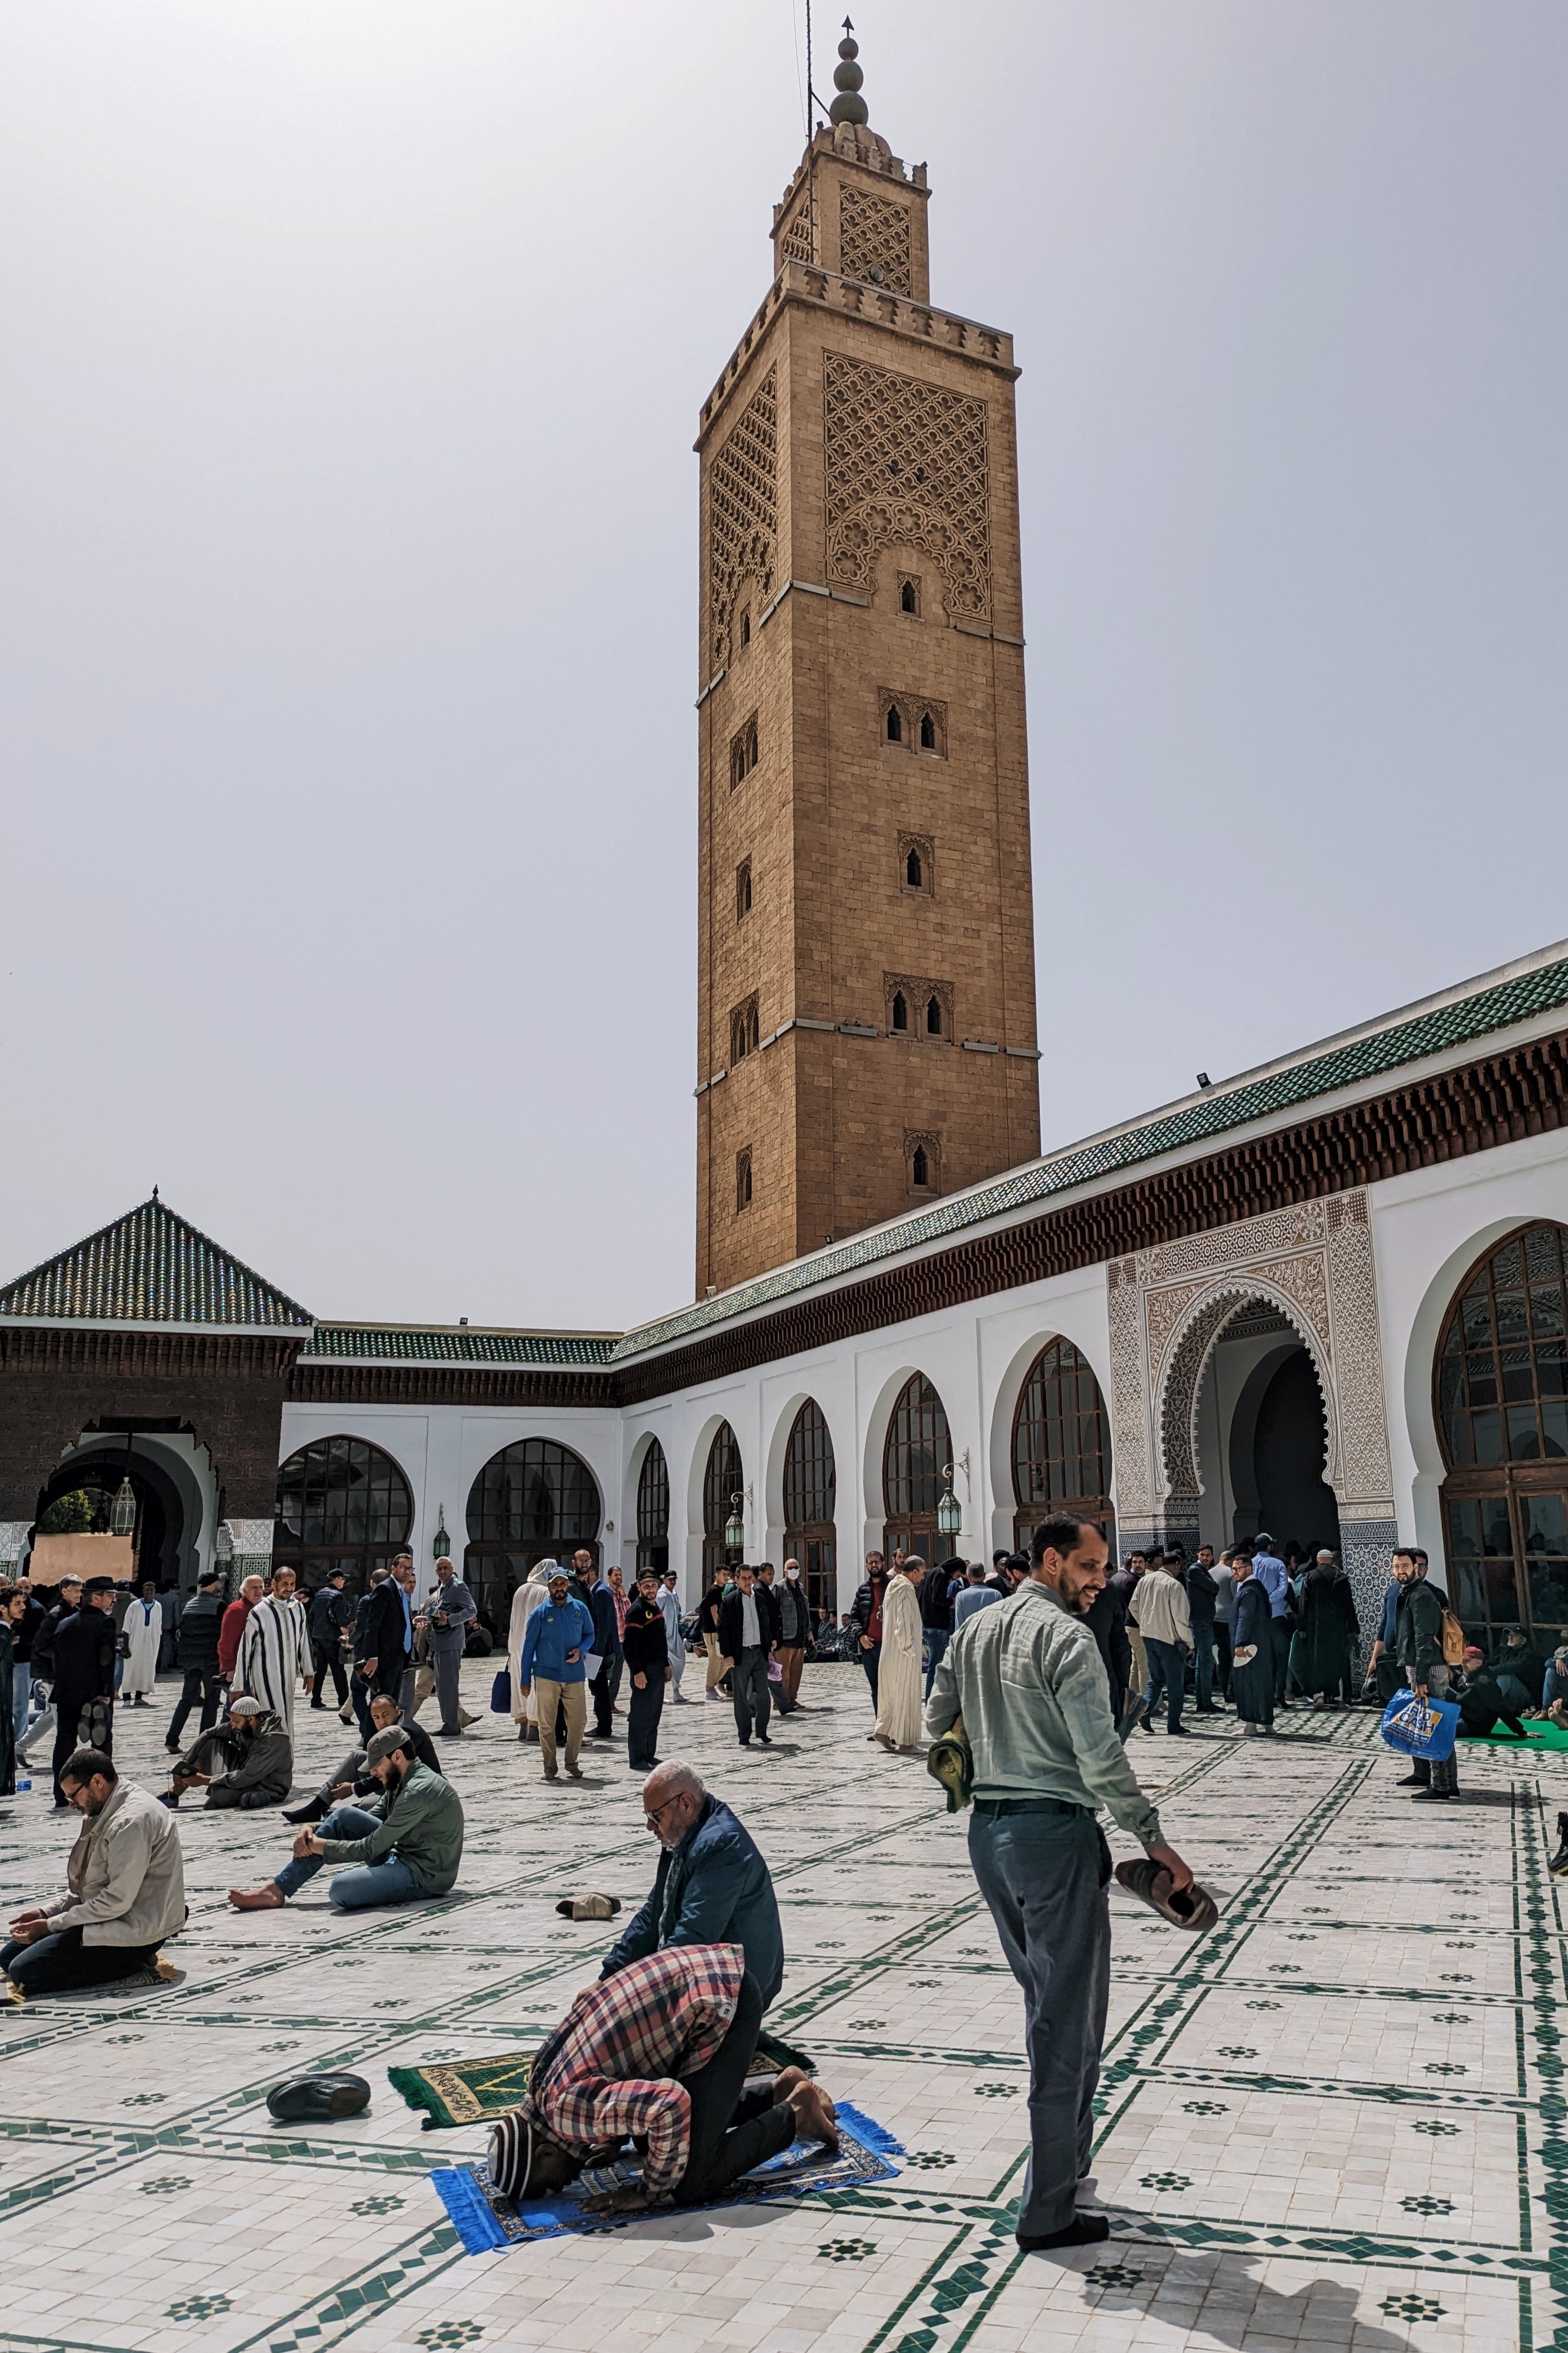 The courtyard of Masjid al-Sunna, Rabat, Morocco